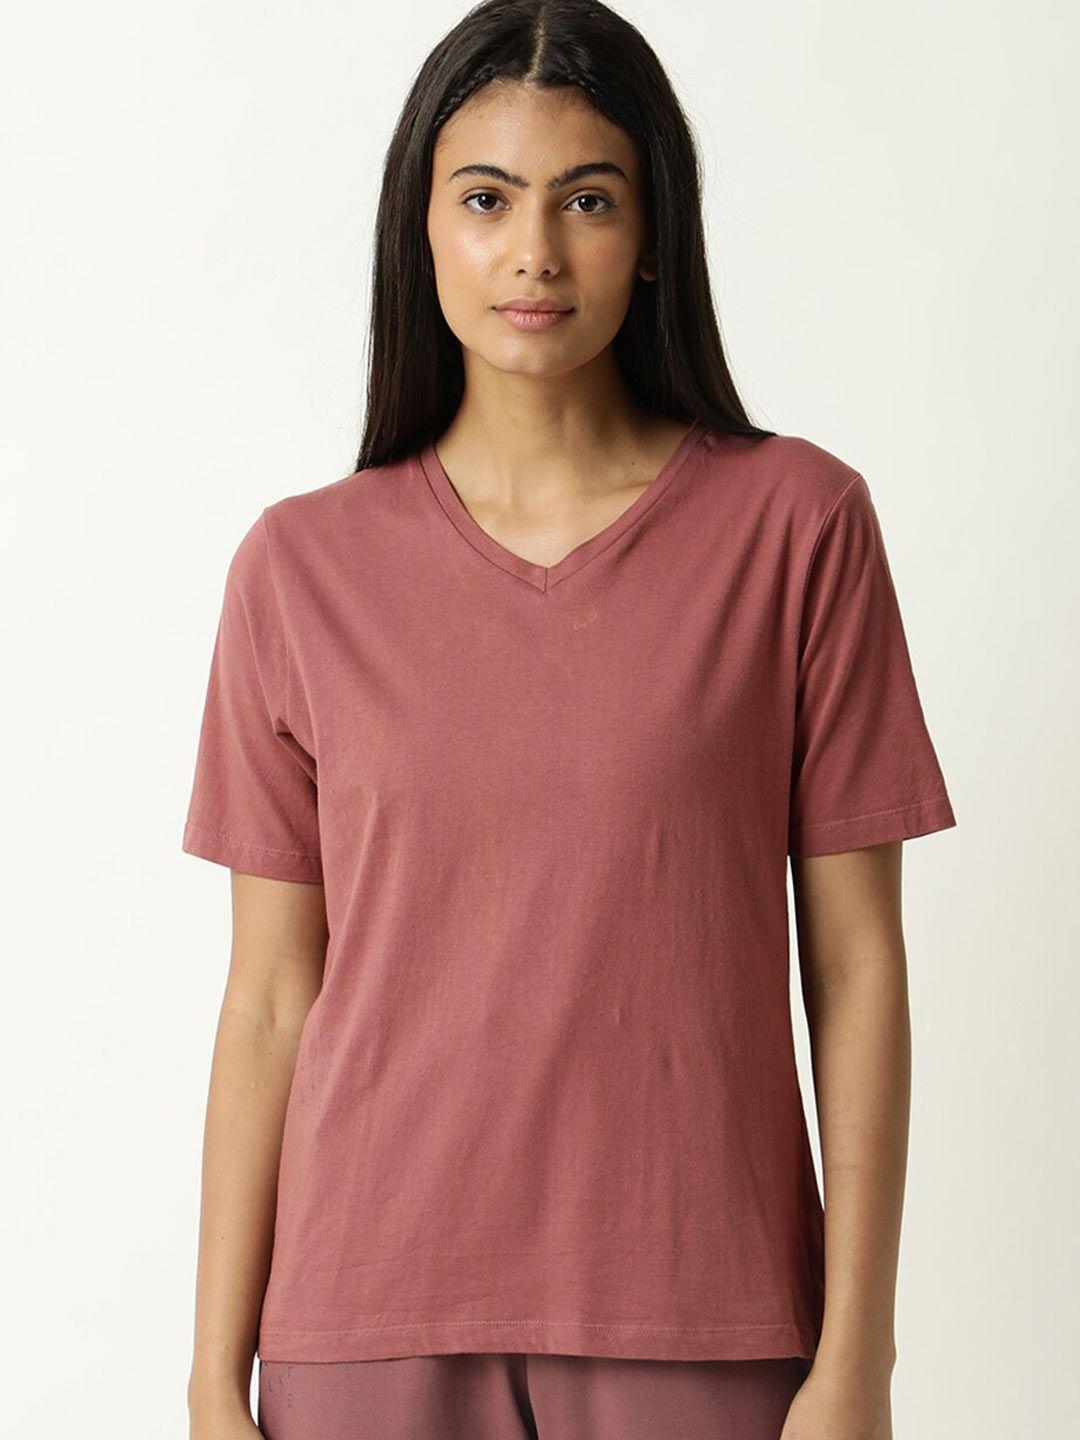 articale-women-mauve-solid-v-neck--slim-fit-cotton-t-shirt